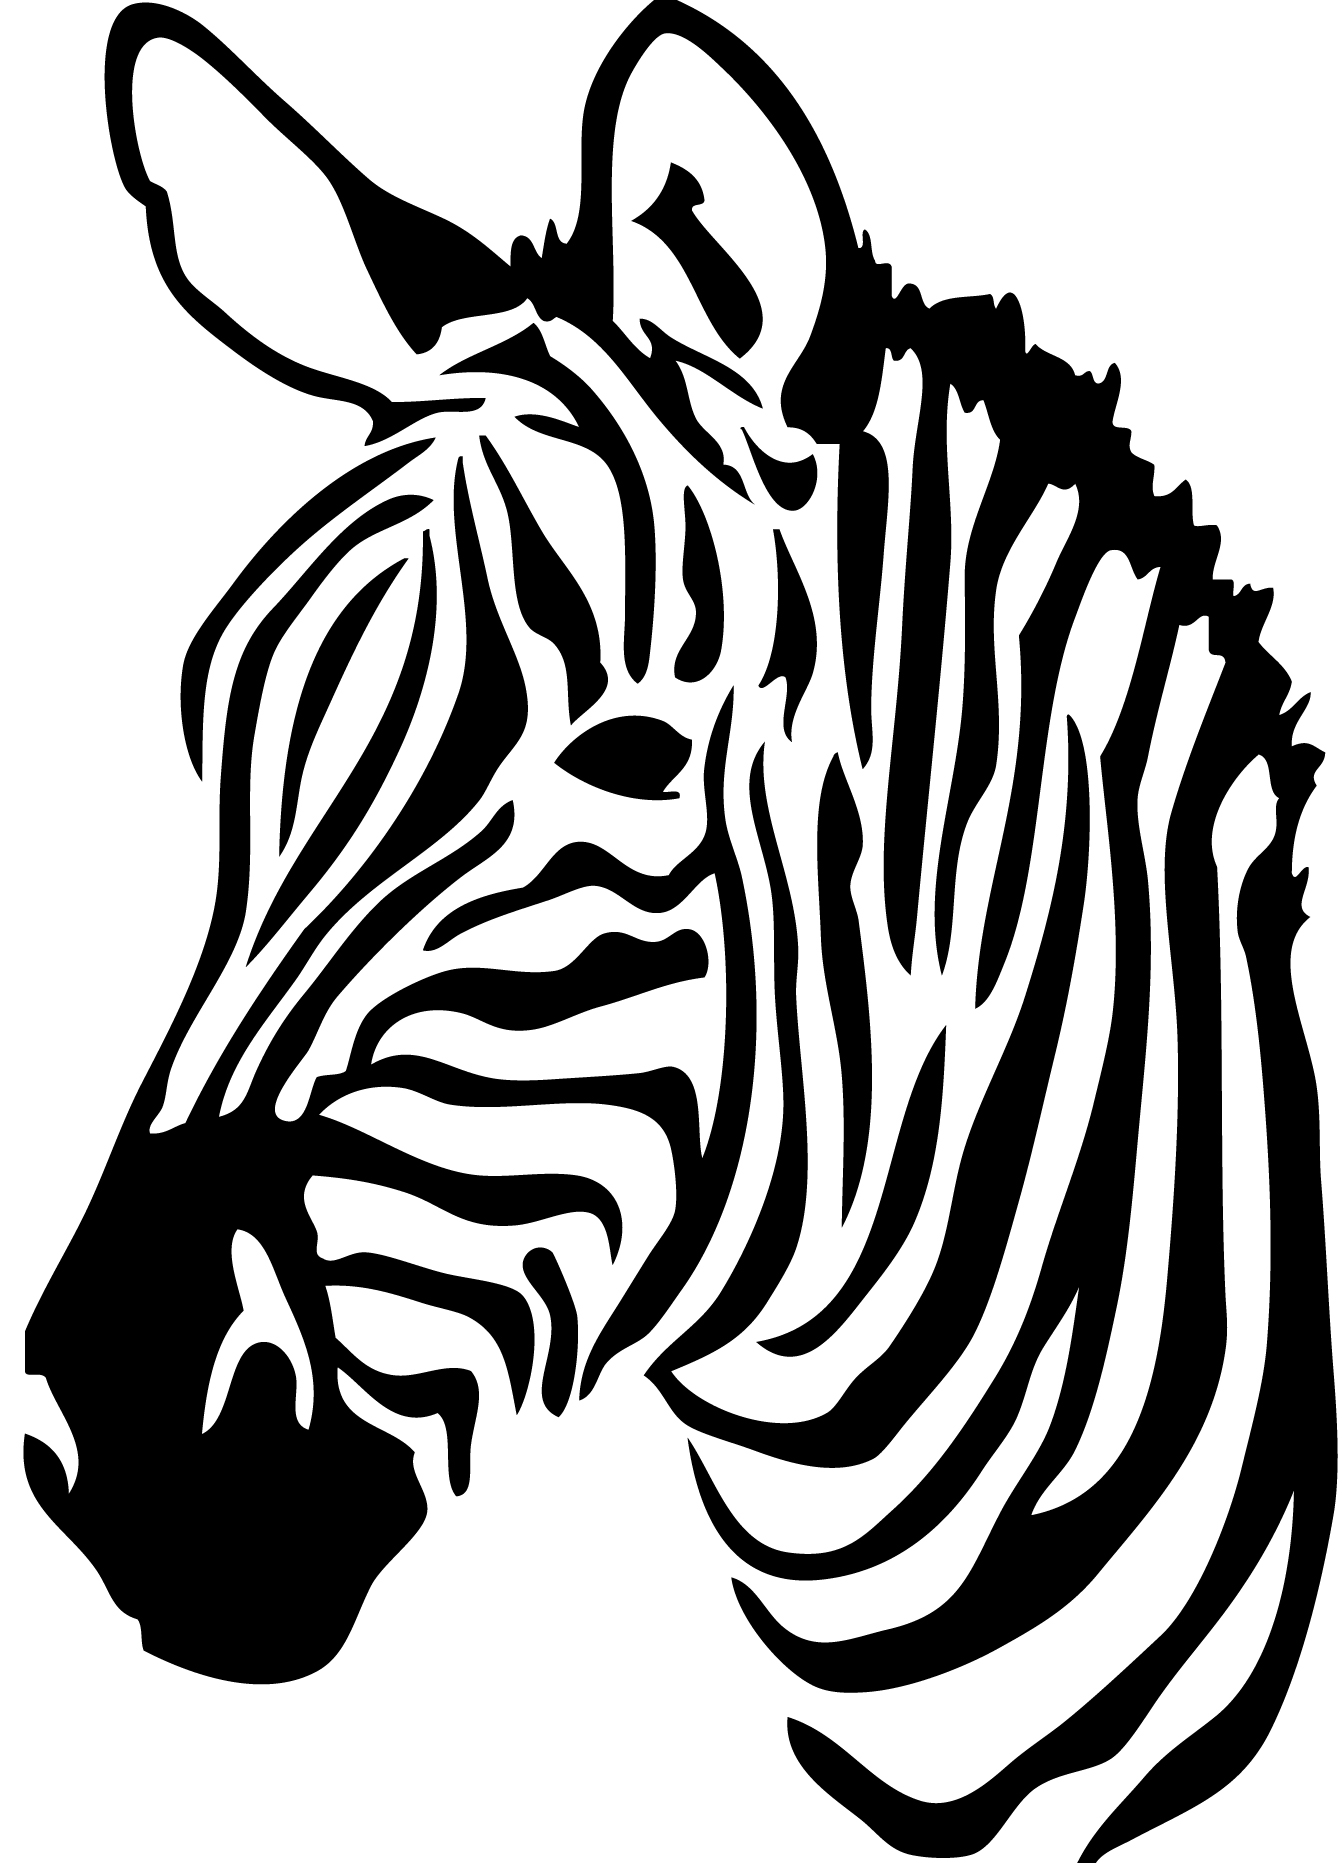 Голова зебры черно-белая